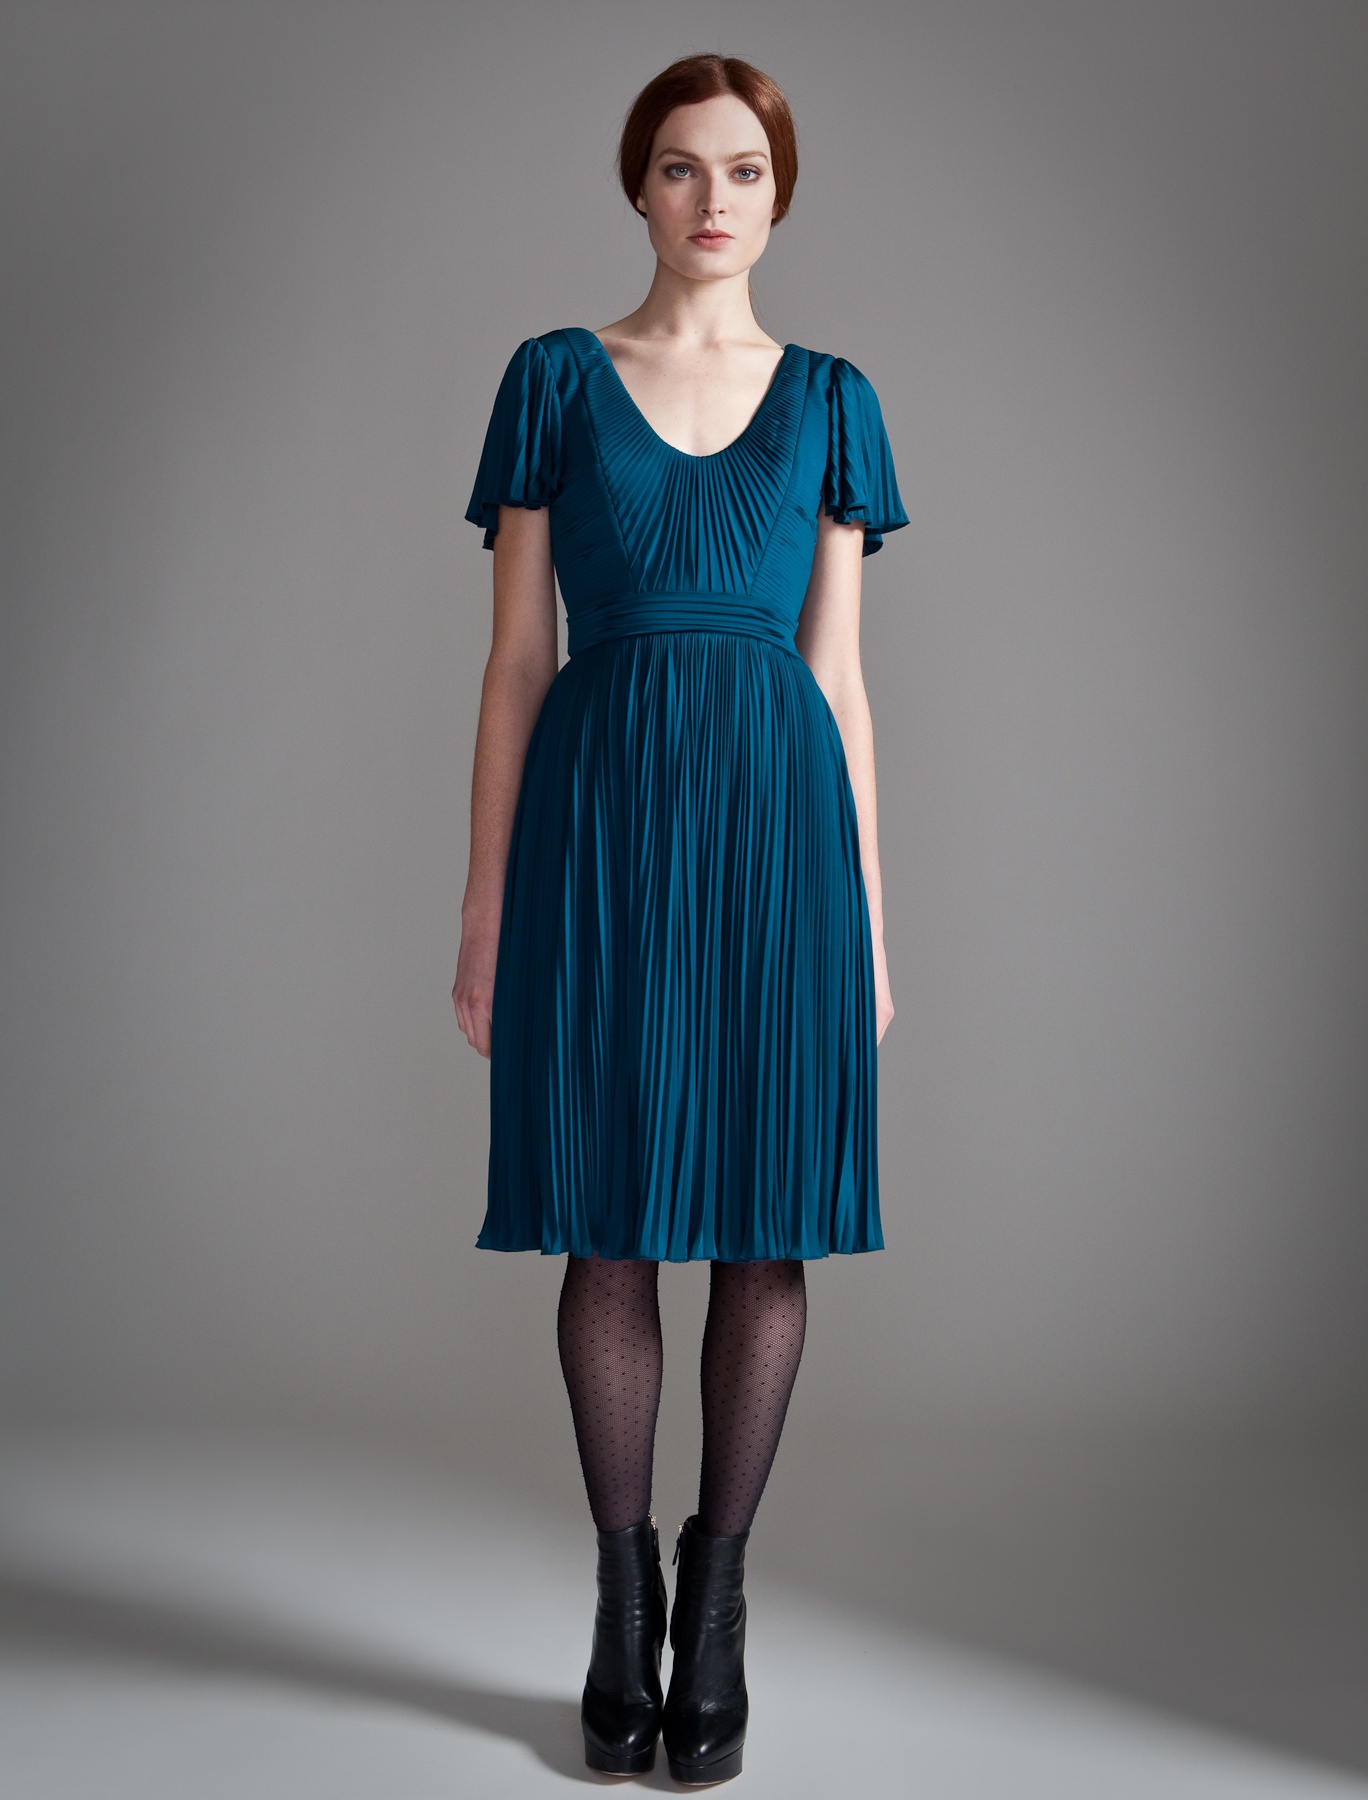 Lyst - Temperley london Relic Dress in Blue